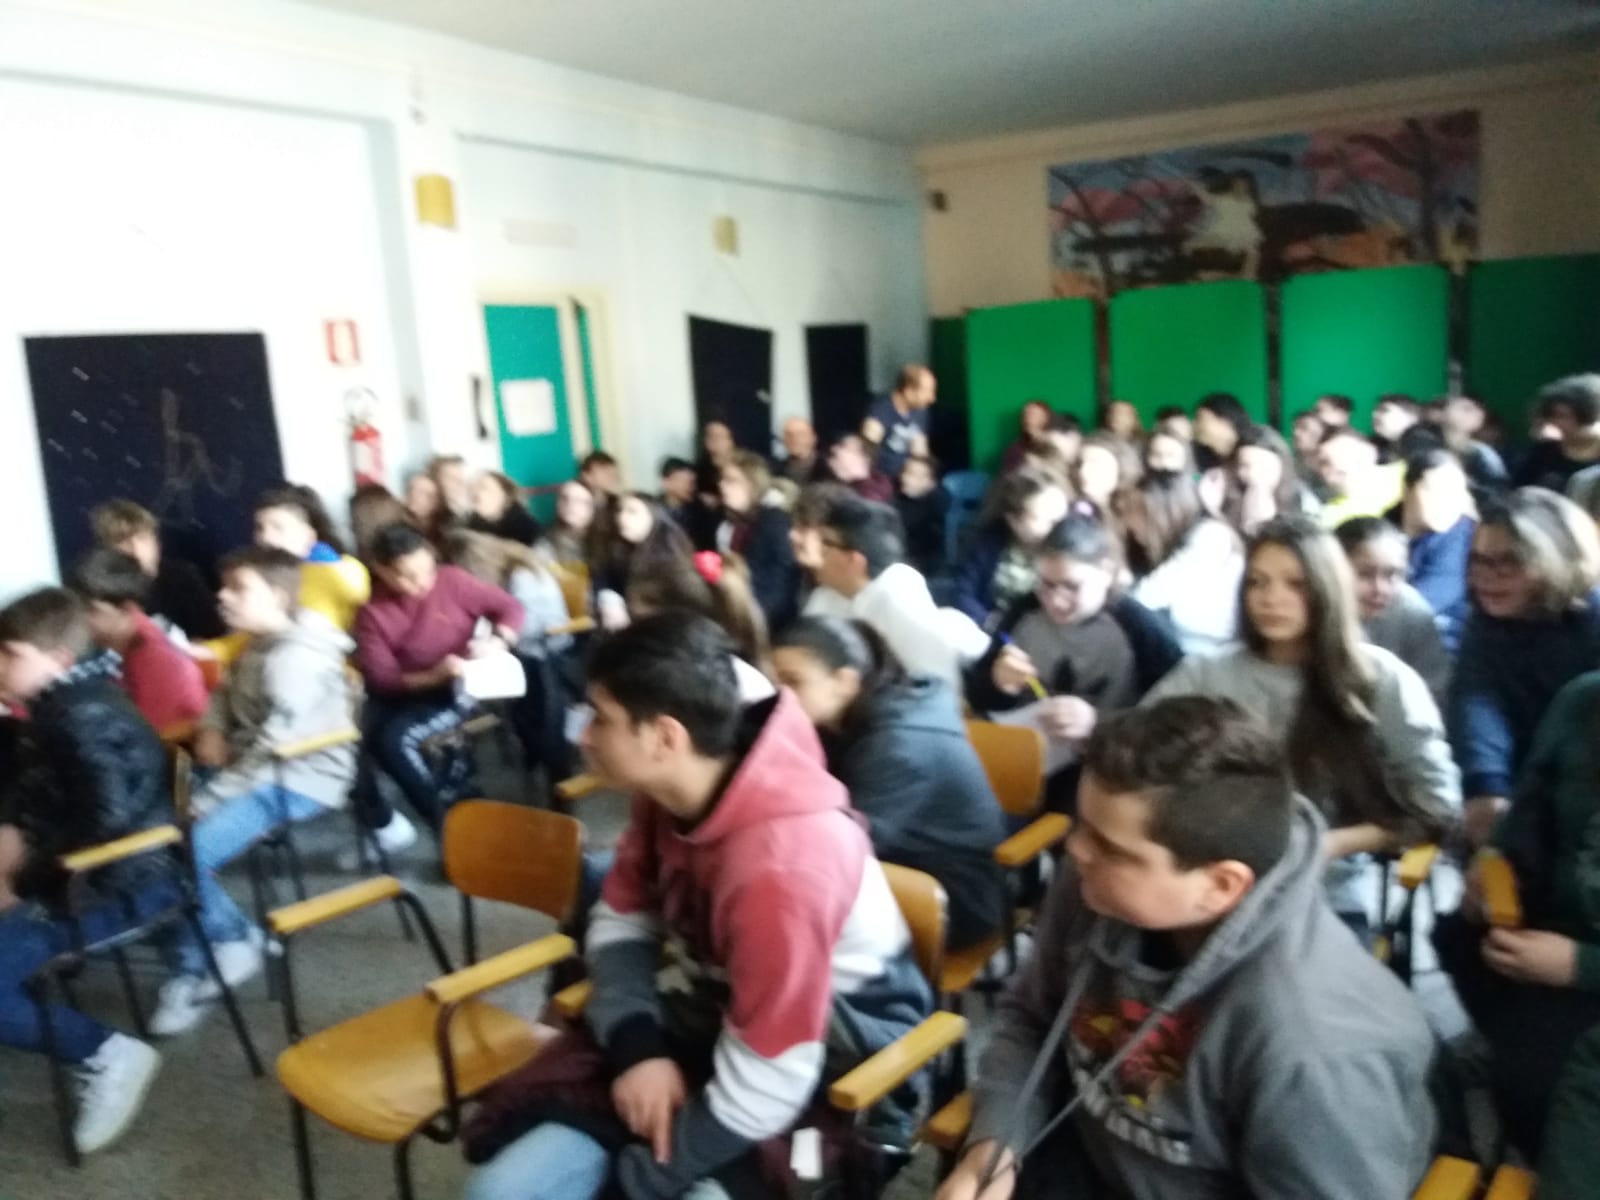 Consiglio Comunale dei Ragazzi di Marino: l’8 maggio oltre 100 ragazzi a Palazzo Colonna con il progetto di Marino Aperta Onlus